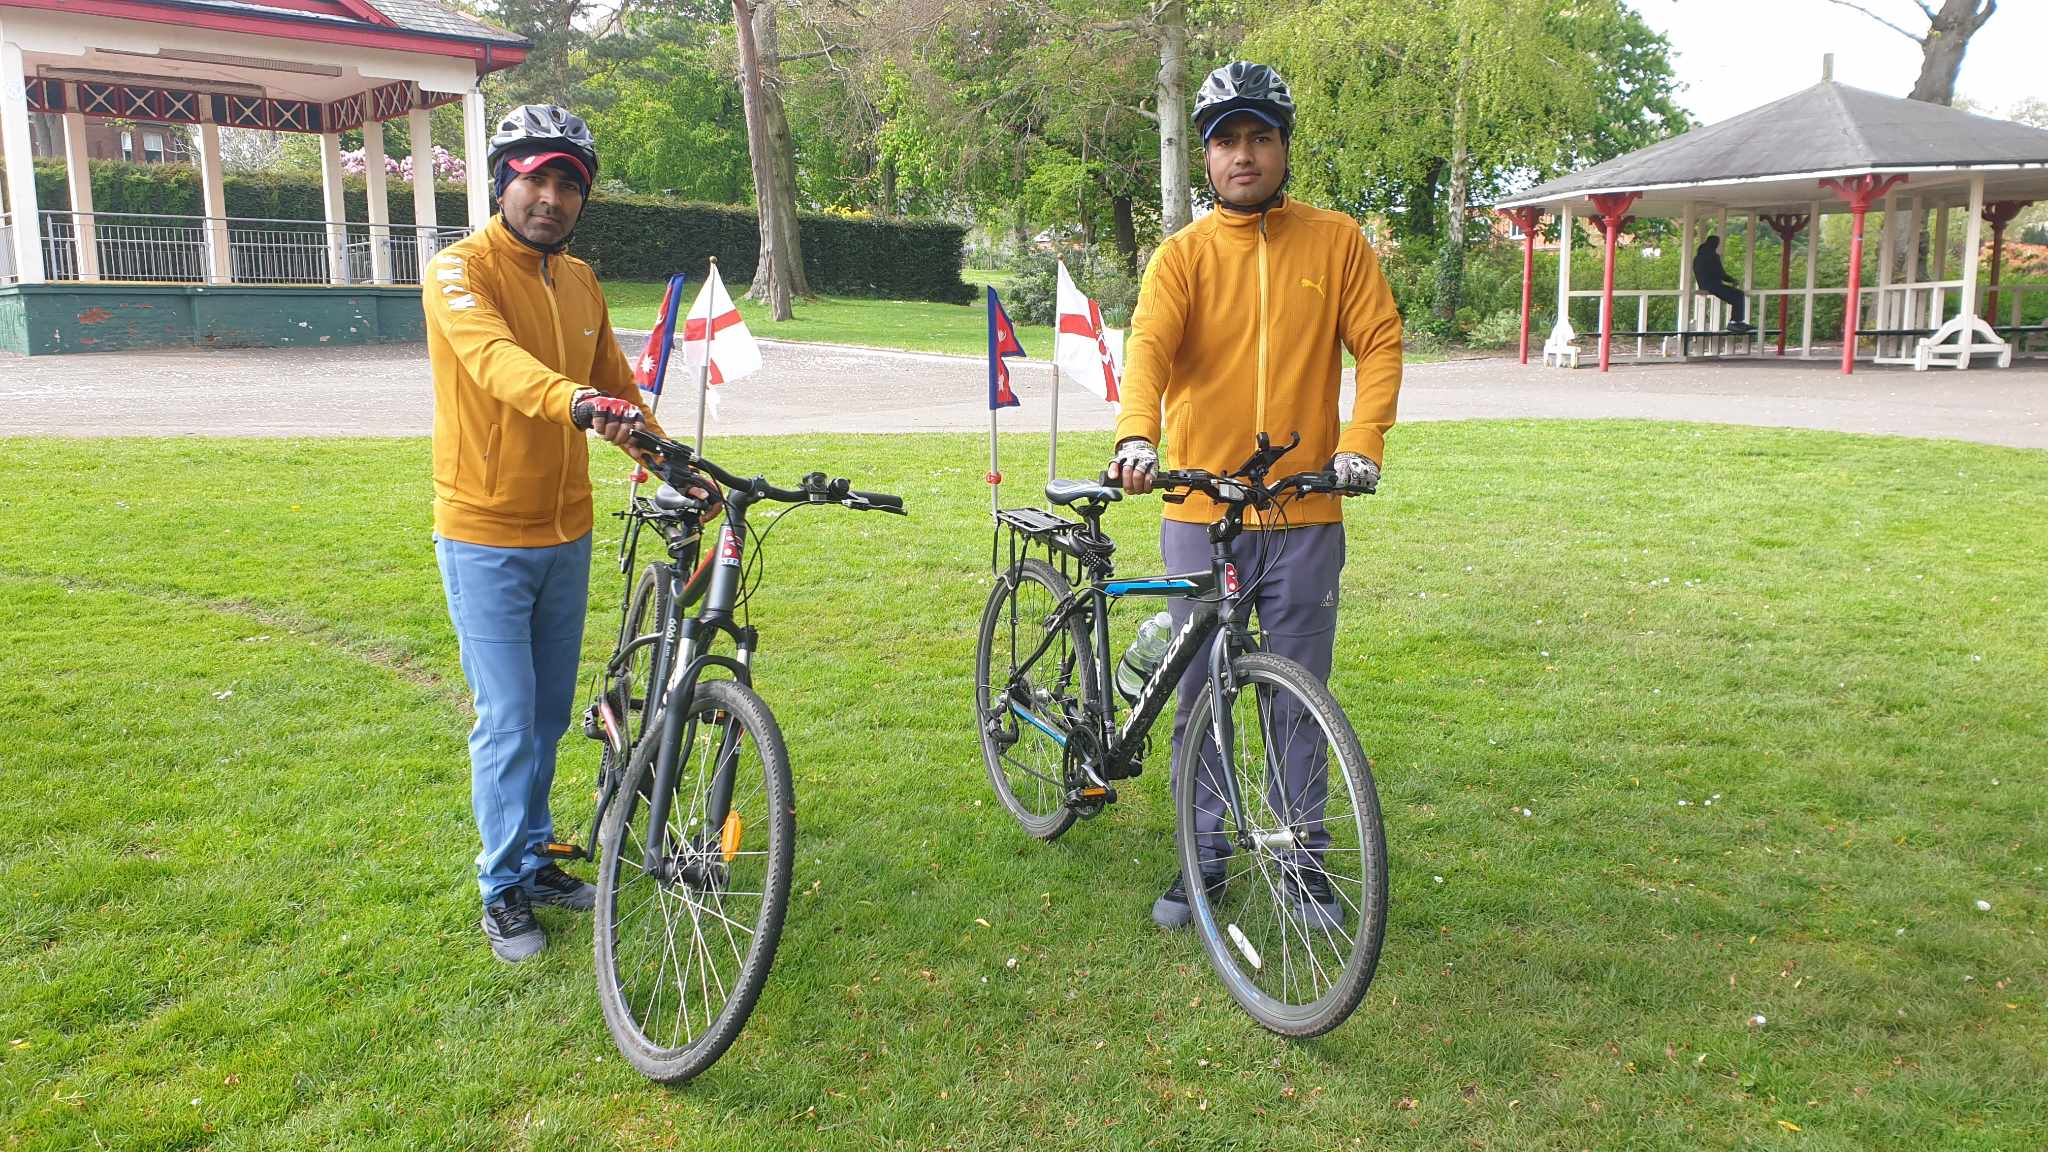 नेपाल गौरव र पहिचान संसारमा फैलाउन दुई विश्व साइकल यात्री सोमबार पोर्चुगल आउँदै